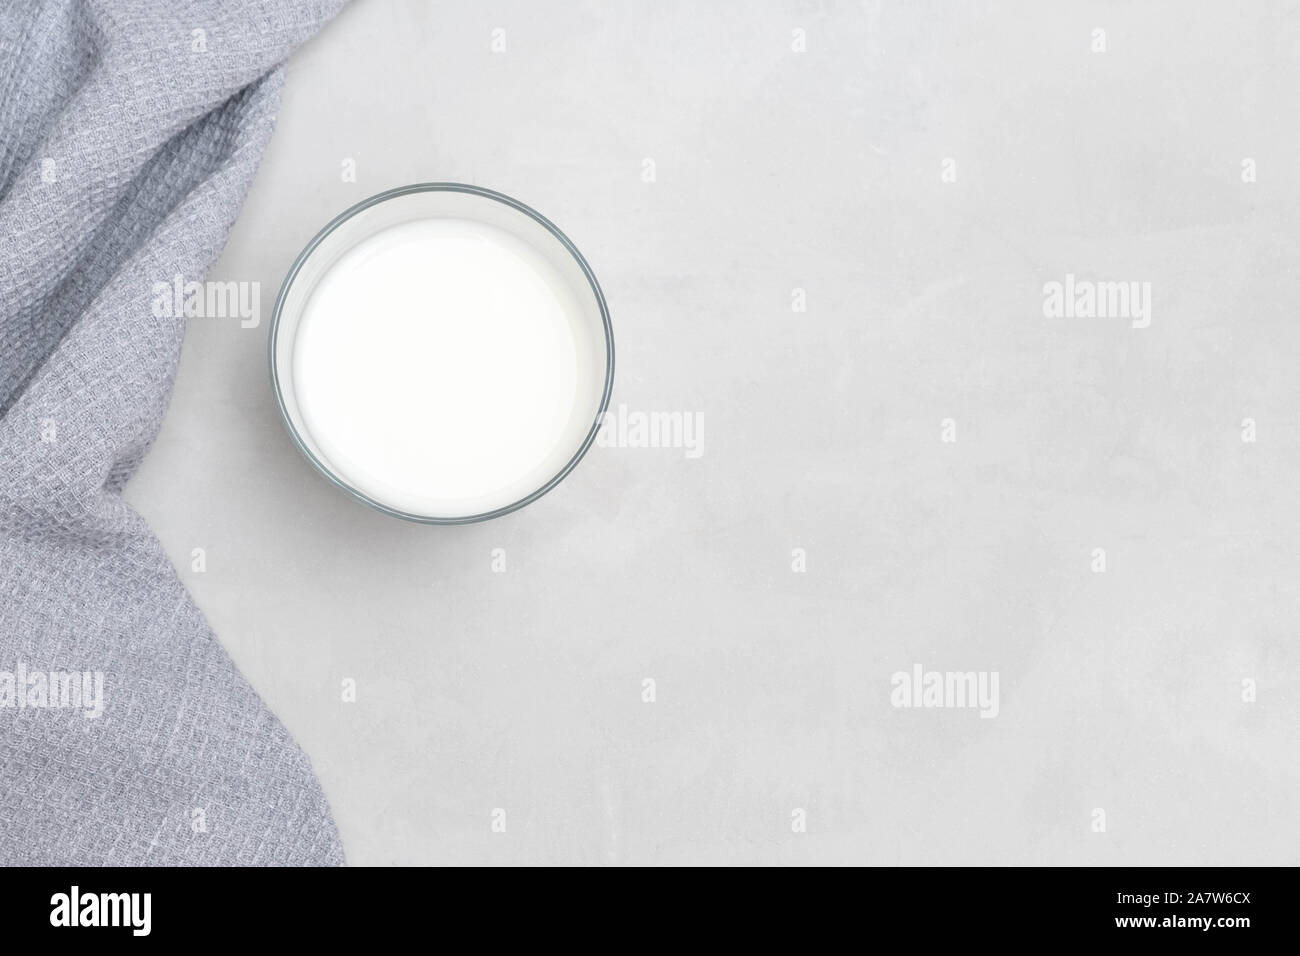 Frische plain Ayran (kefir) Joghurt Drink auf grauem Beton Hintergrund. Stockfoto